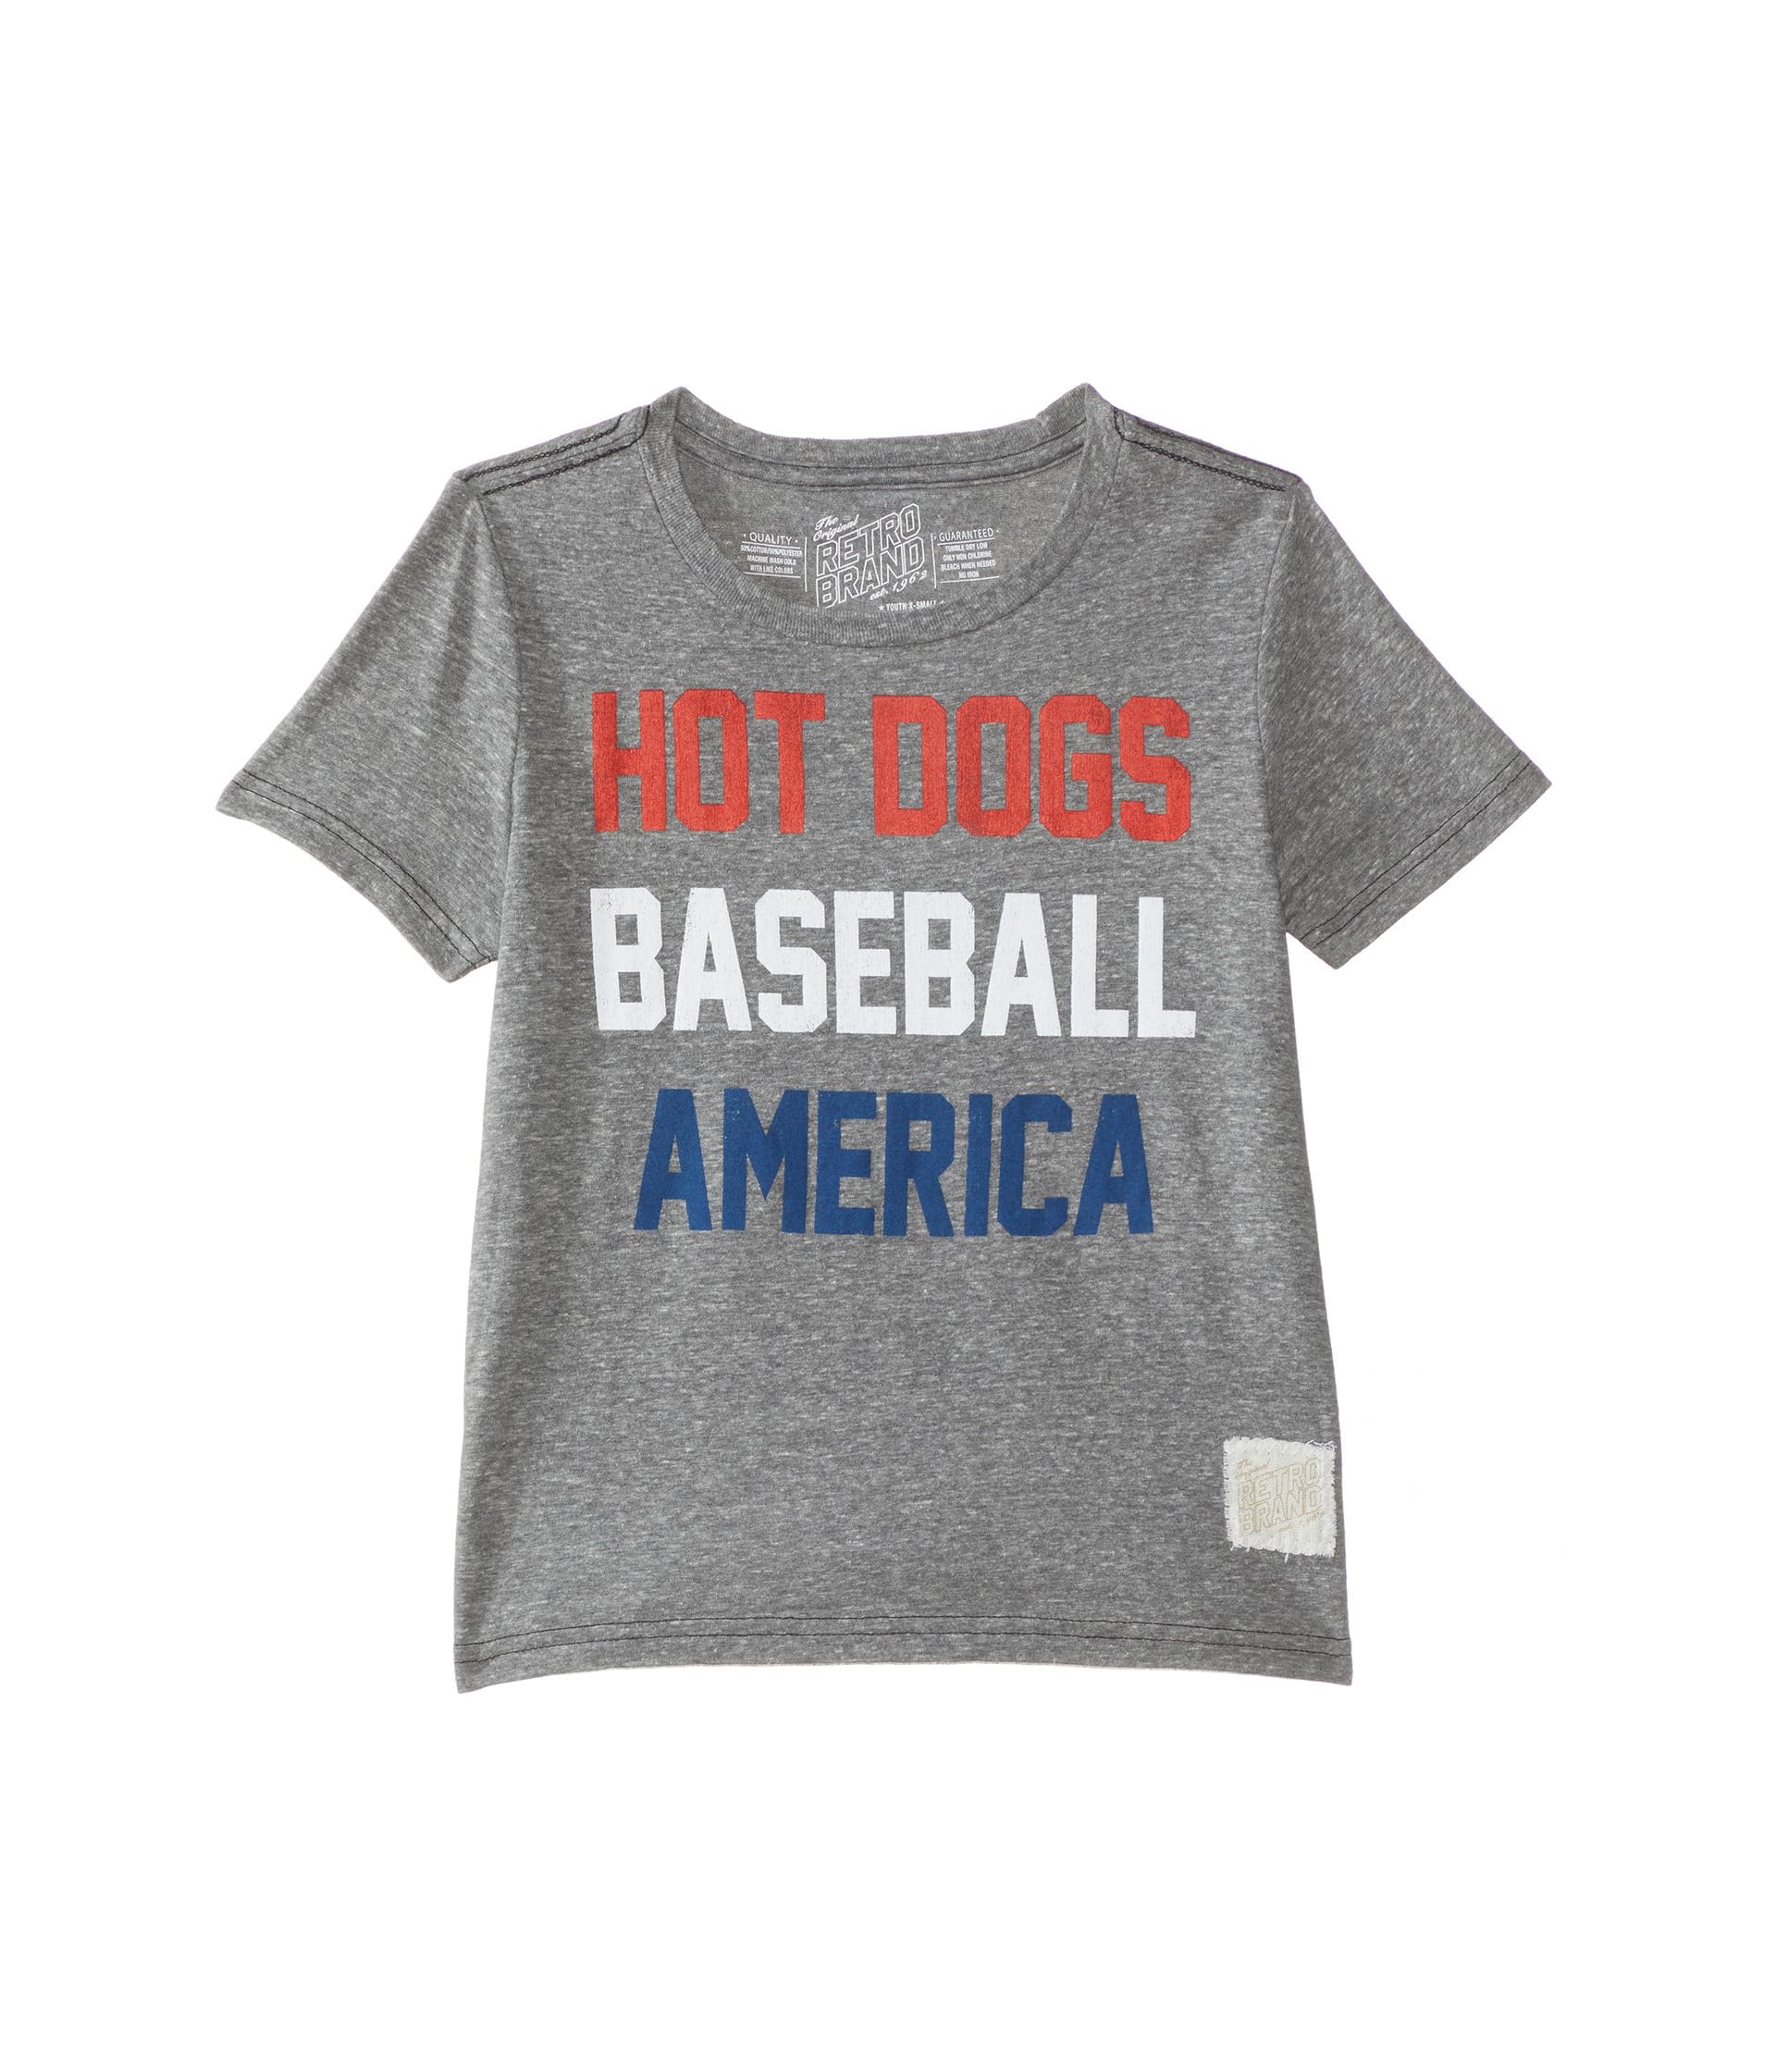 Футболка Tri-Blend Hot Dogs Baseball America с круглым вырезом (для больших детей) The Original Retro Brand Kids